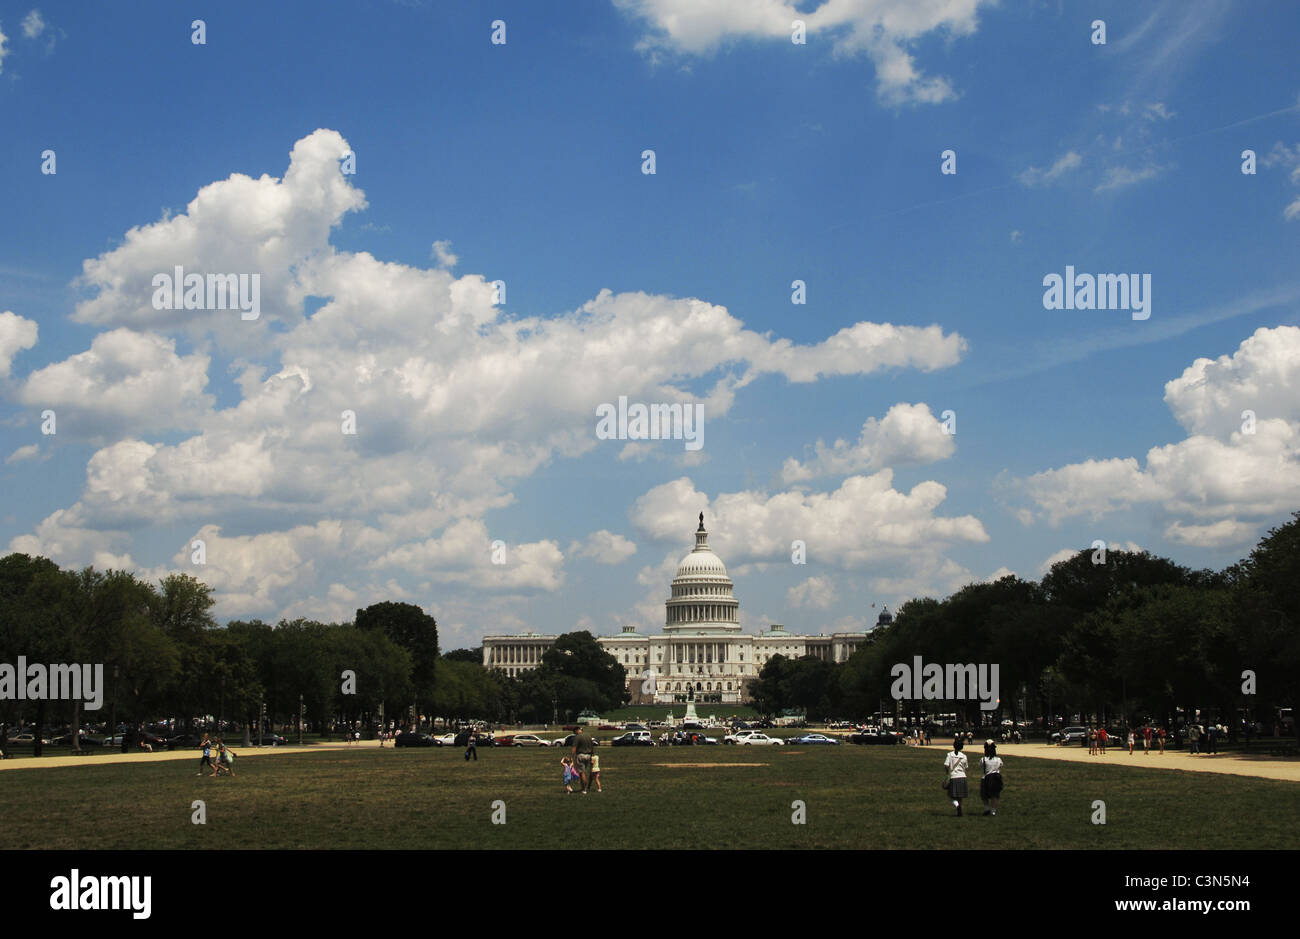 United States. Washington D.C. National Mall. At background, United States Capitol. Stock Photo